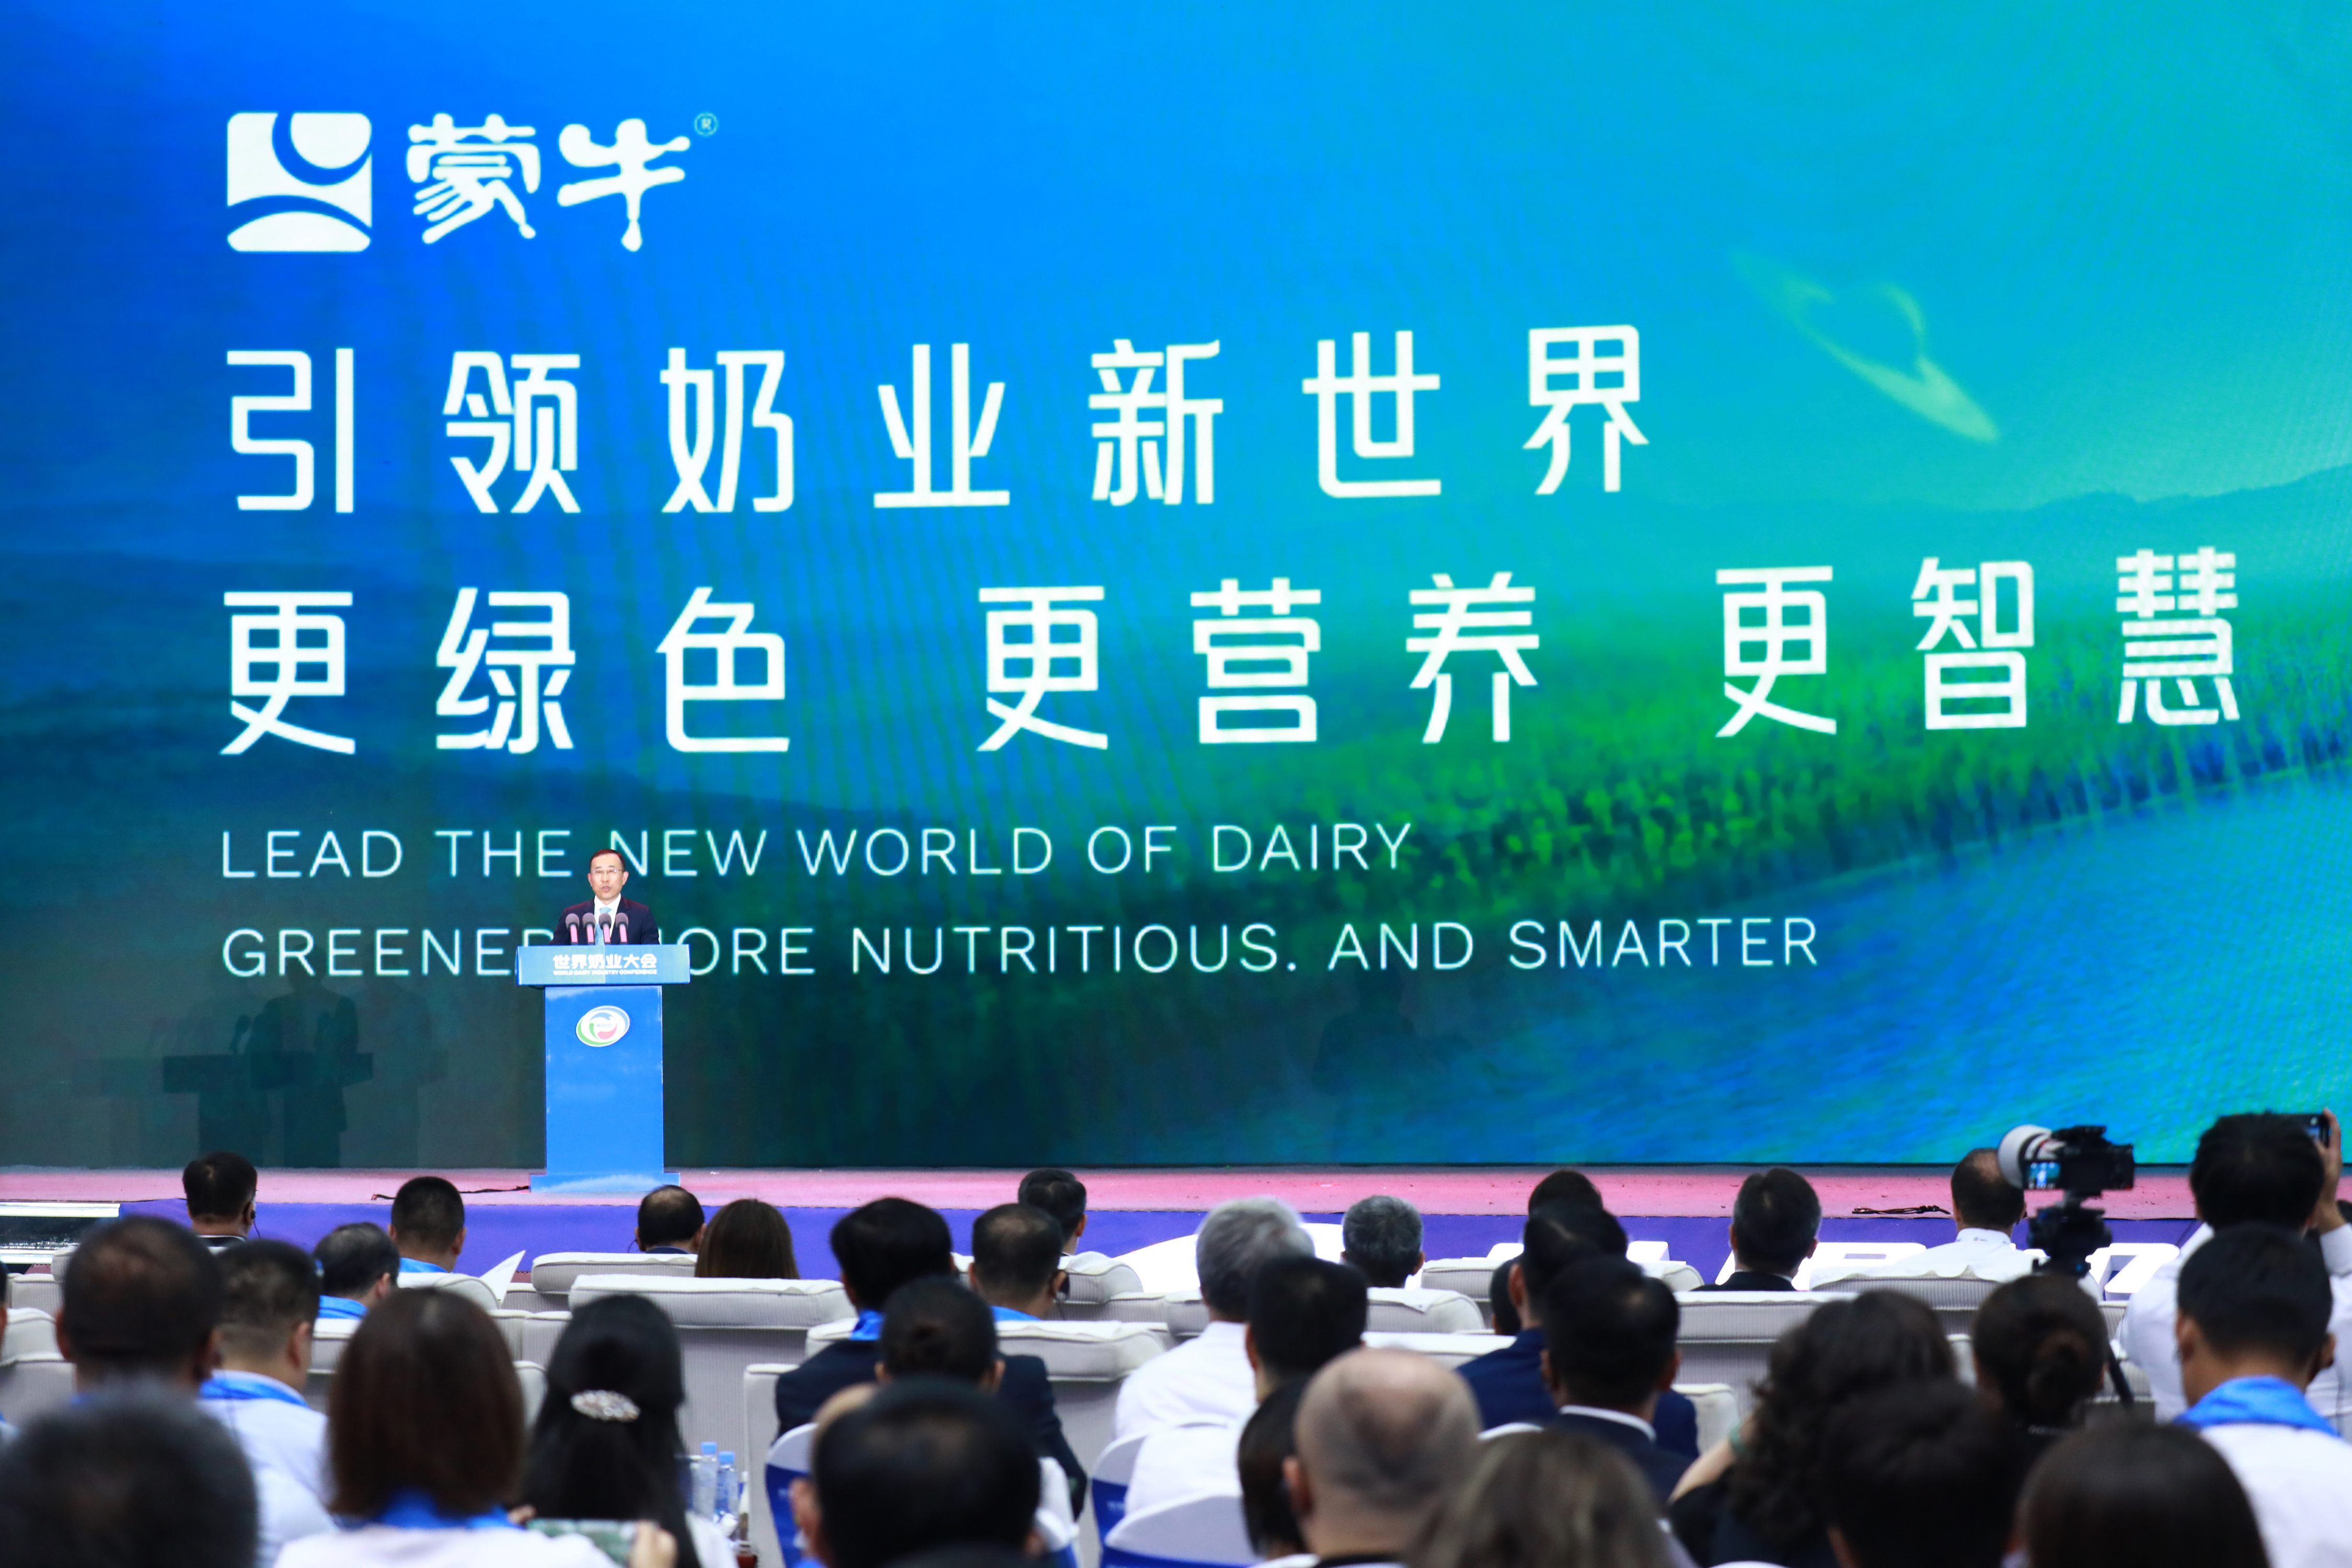 蒙牛卢敏放为中国乳都代言 “三大战略”引领更好乳业未来